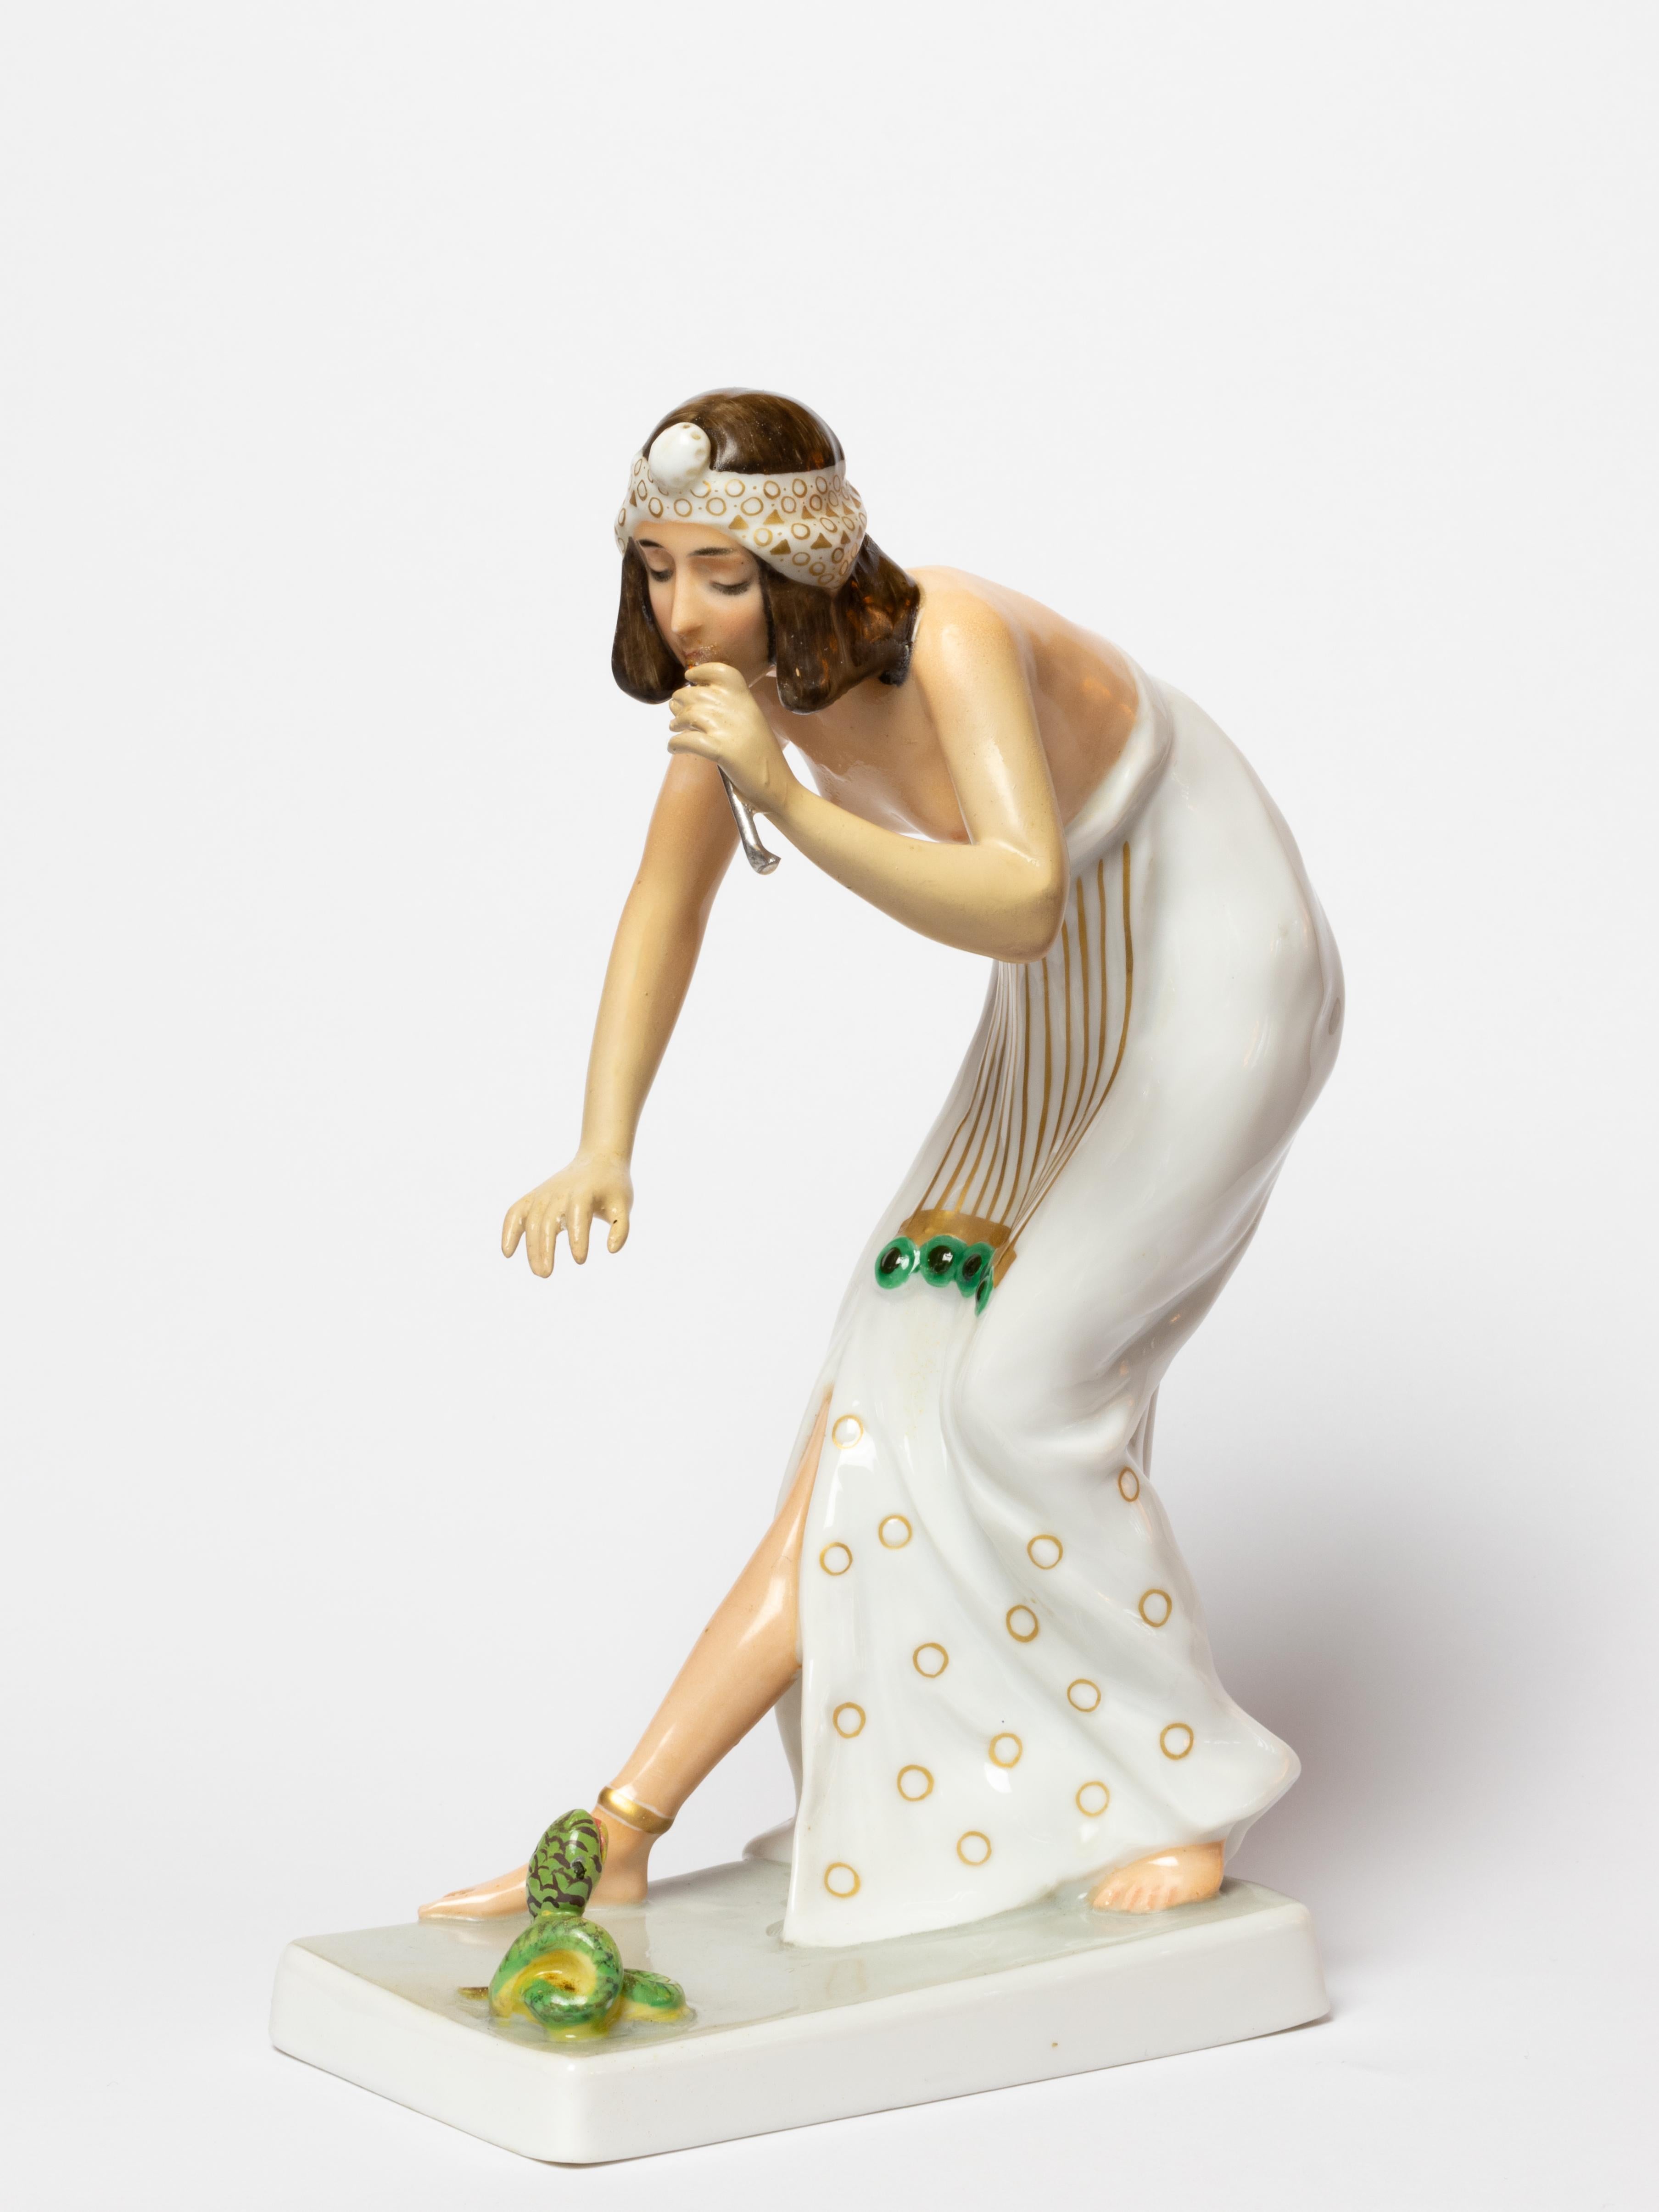 Rosenthal-Porzellanfigur eines Schlangenbeschwörers, nach einem Modell von Berthold Boesz, Modell Nr. K442. 
Bibelot in Form einer Frau im ägyptischen Stil, die auf einem rechteckigen Sockel eine kleine Schlange verzaubert.
